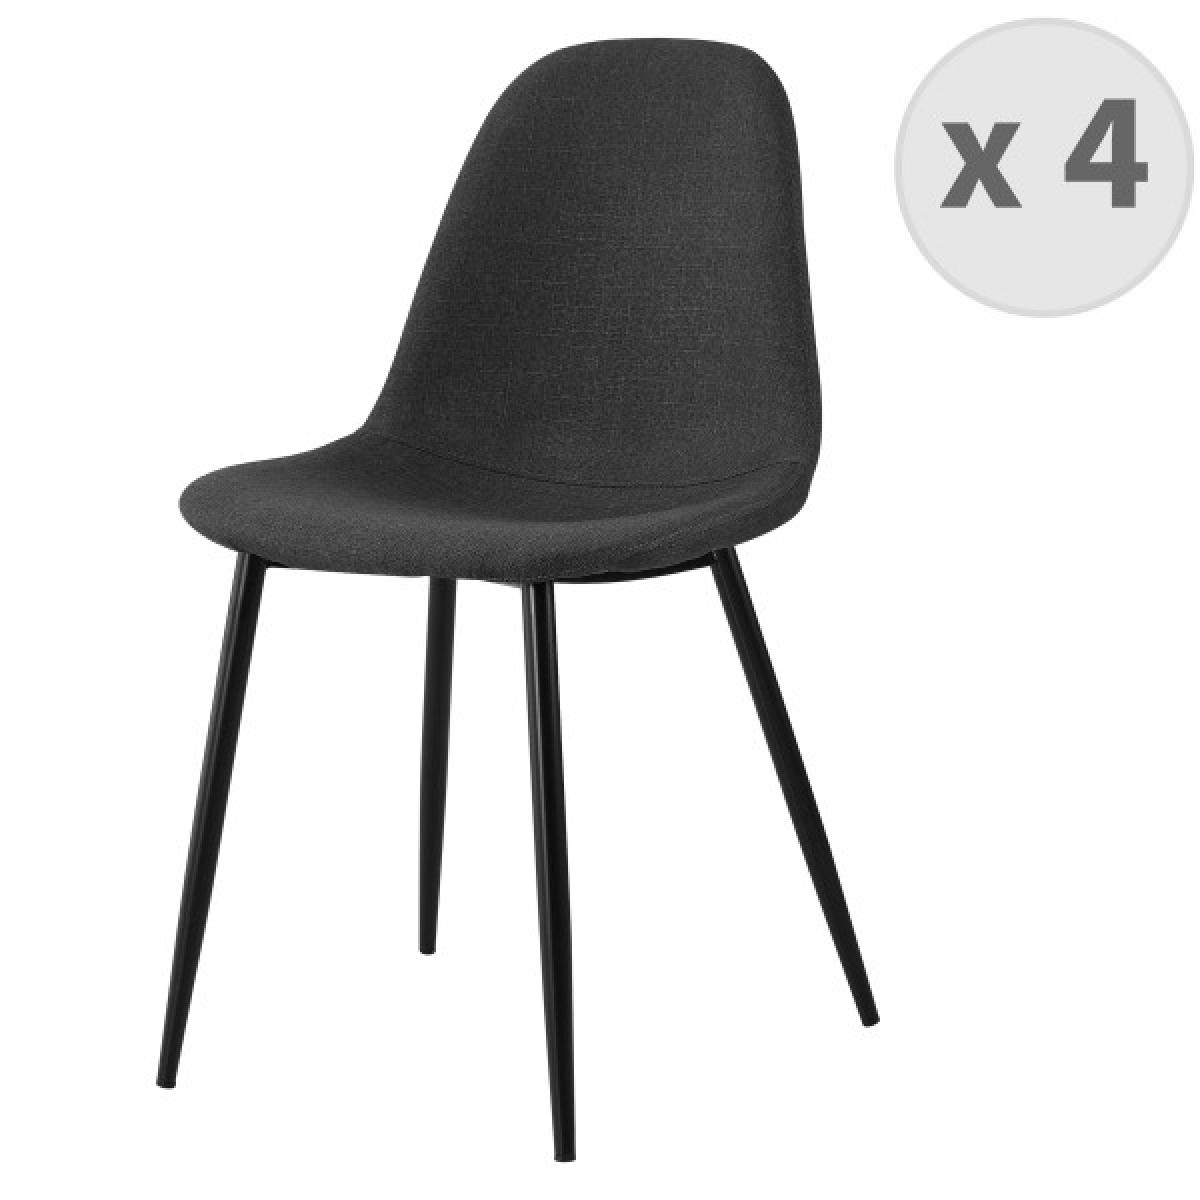 Moloo - Lot X4 chaises Orlando tissu gris foncé pieds métal noir - Chaises